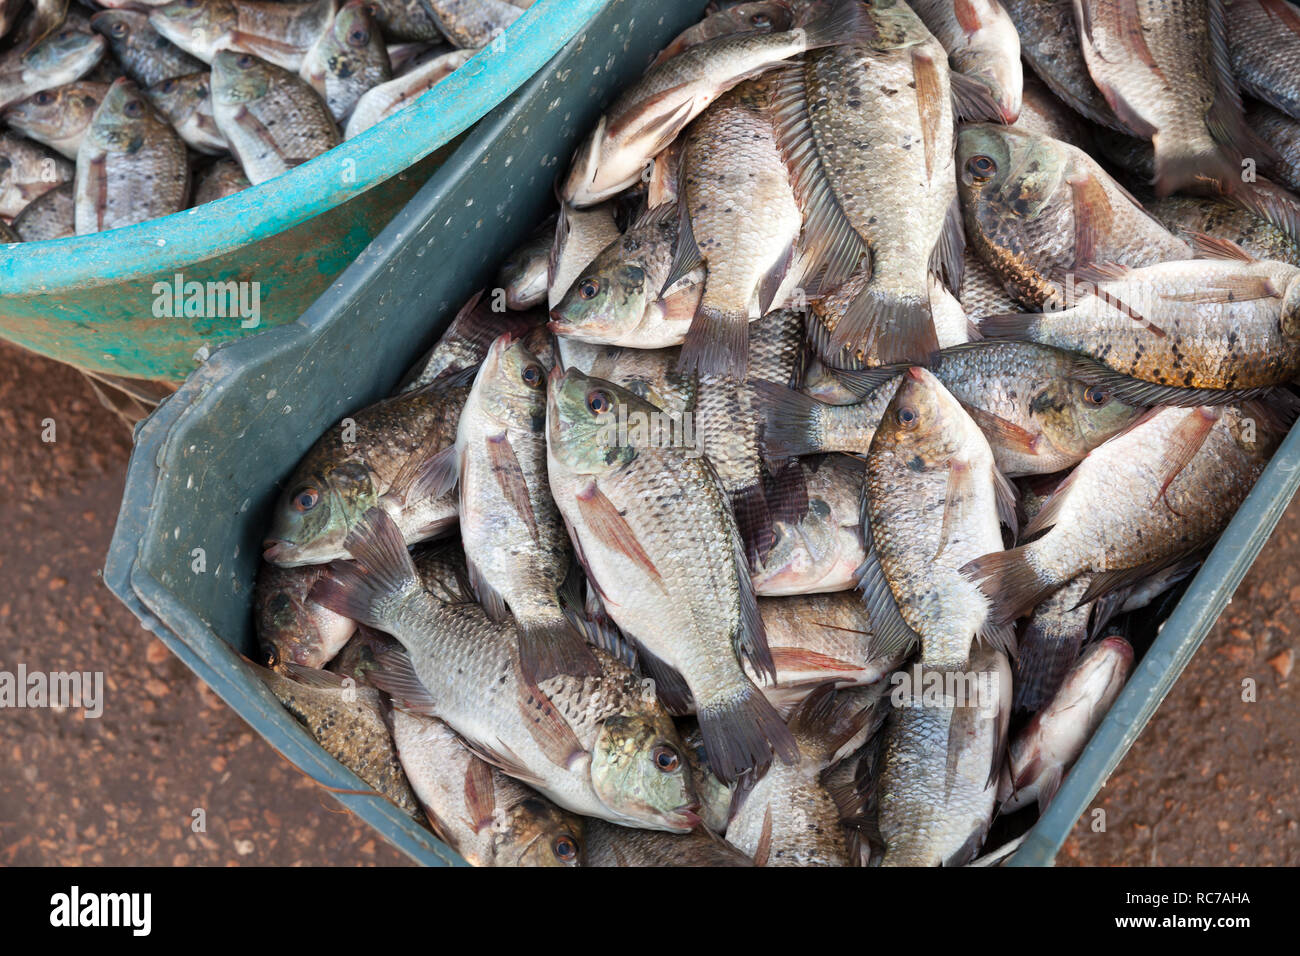 La prise de poisson. Sargo ou blanc poissons daurade résidait dans les boîtes en plastique vert sur un marché d'Alexandrie, Egypte Banque D'Images